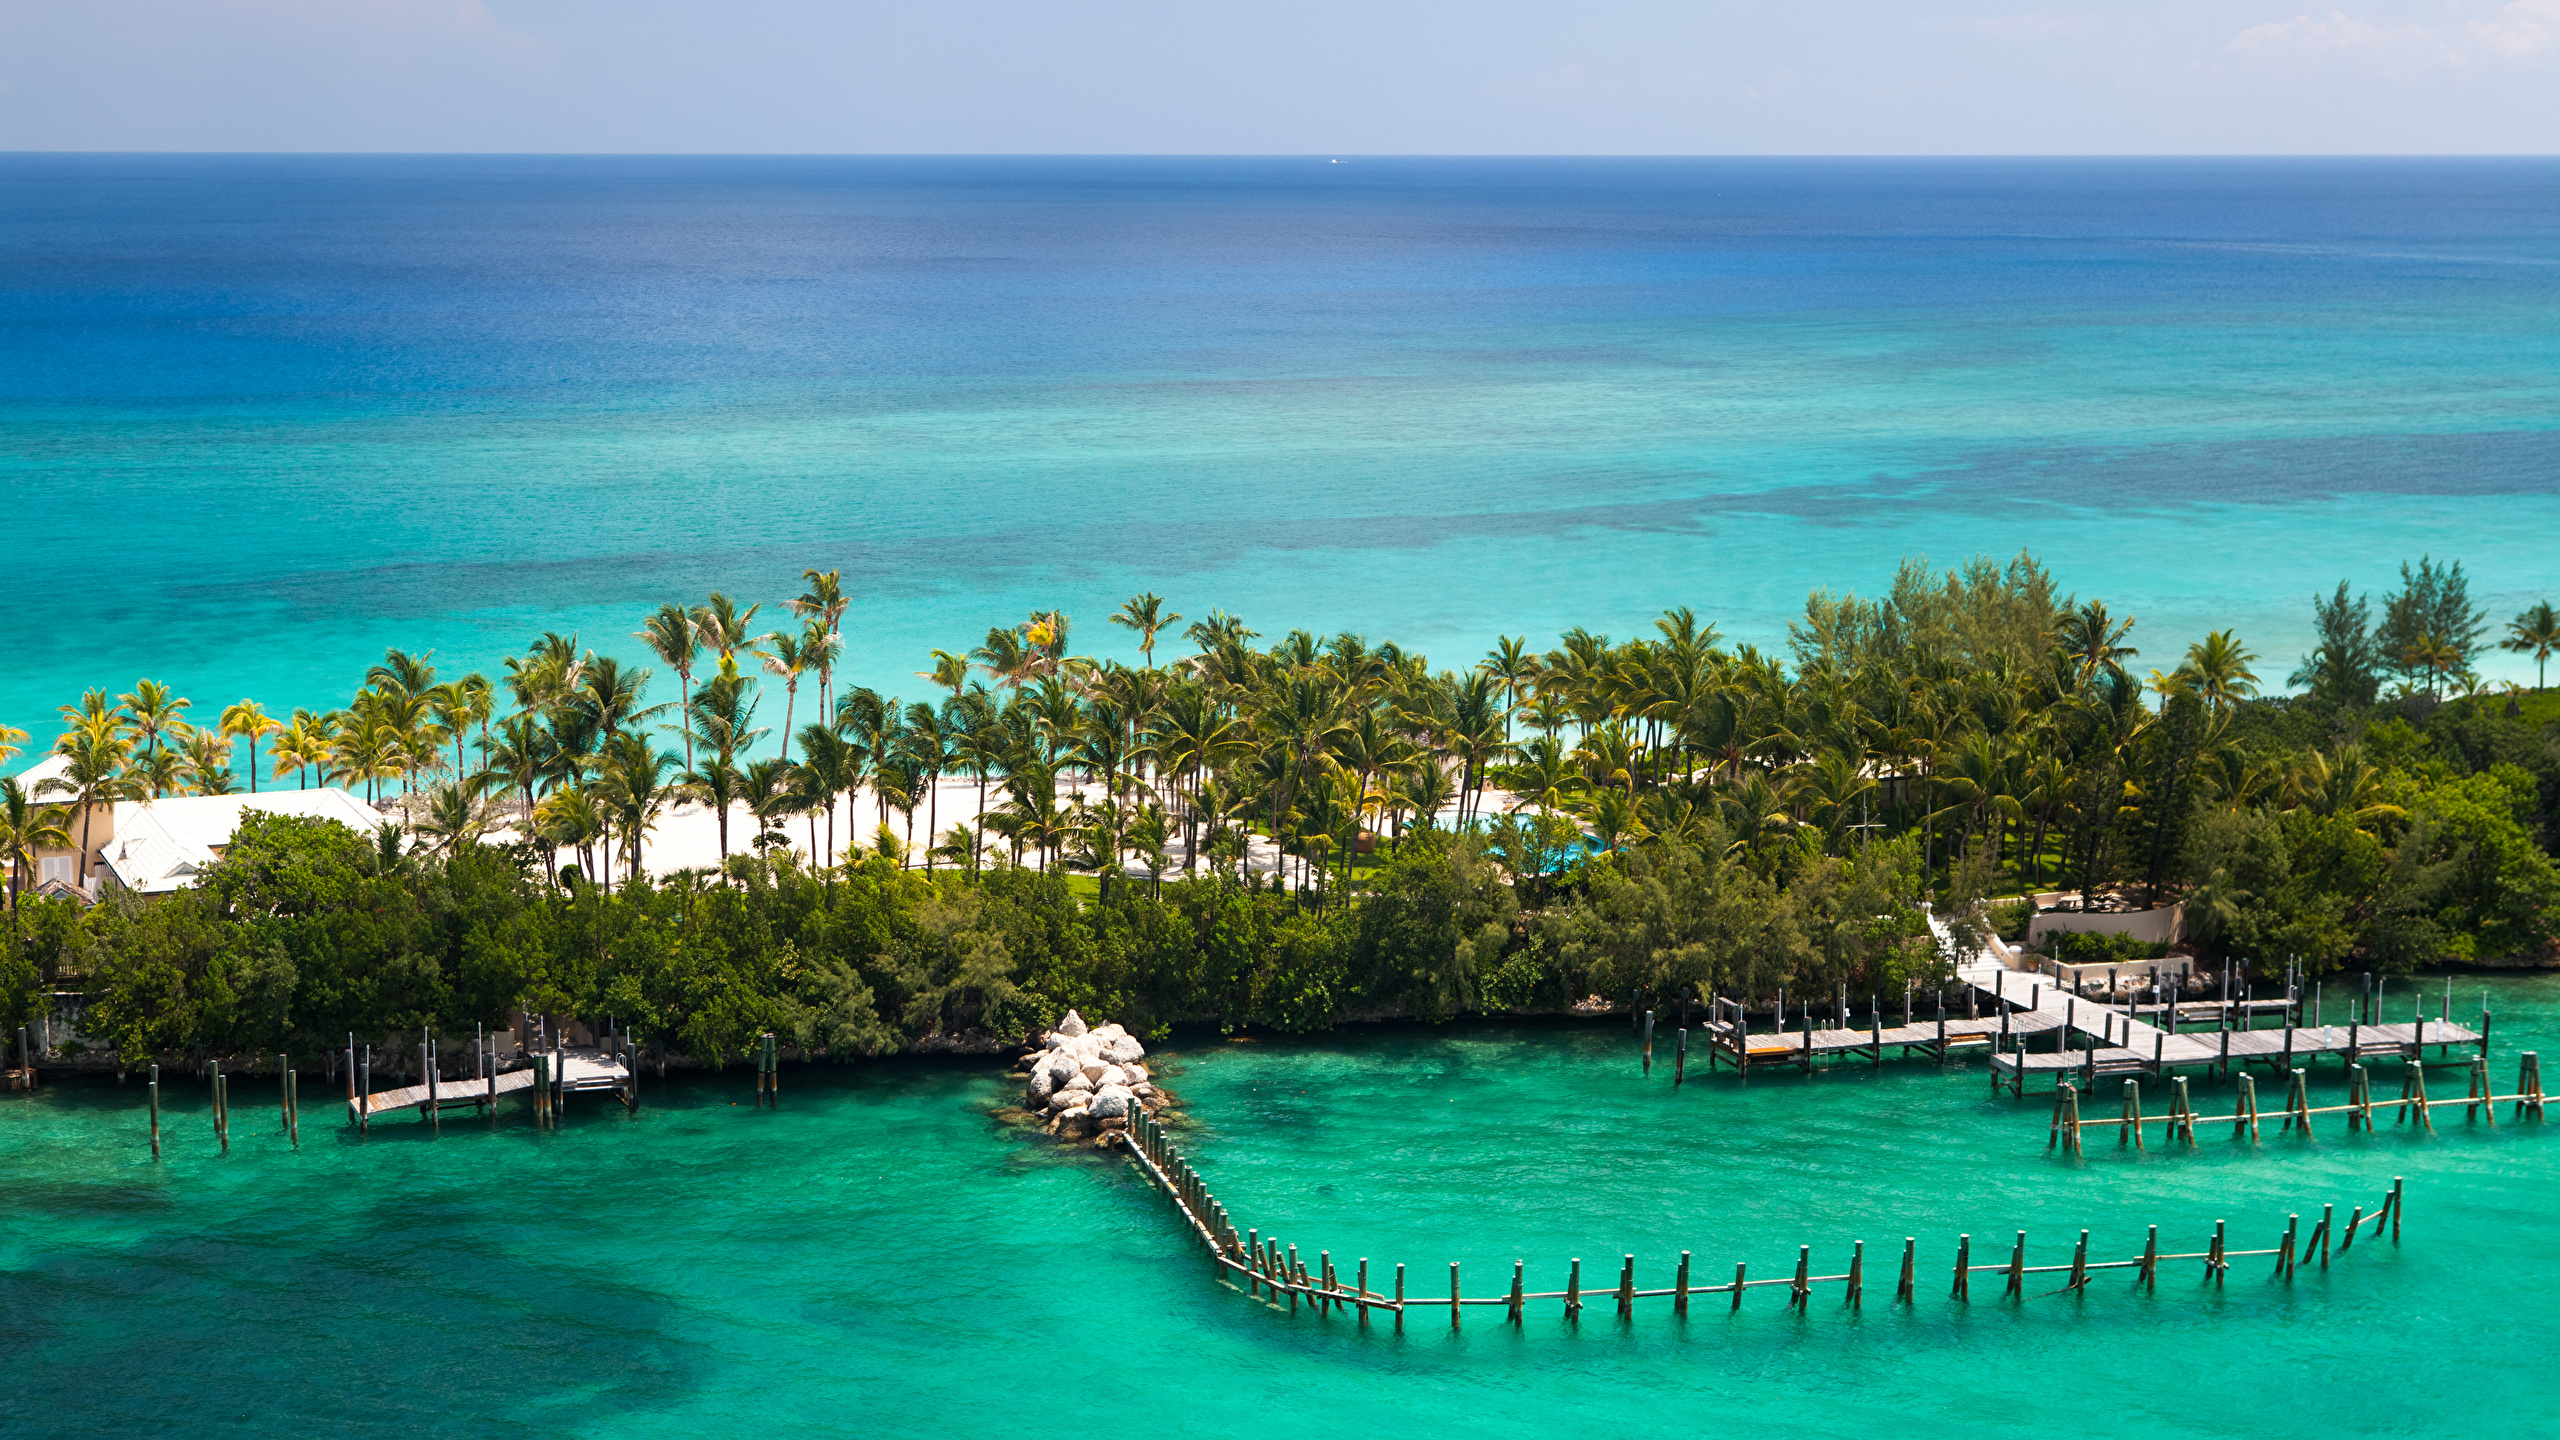 壁紙 2560x1440 熱帯 海 リゾート 桟橋 海岸 Bahamas ヤシ 自然 ダウンロード 写真